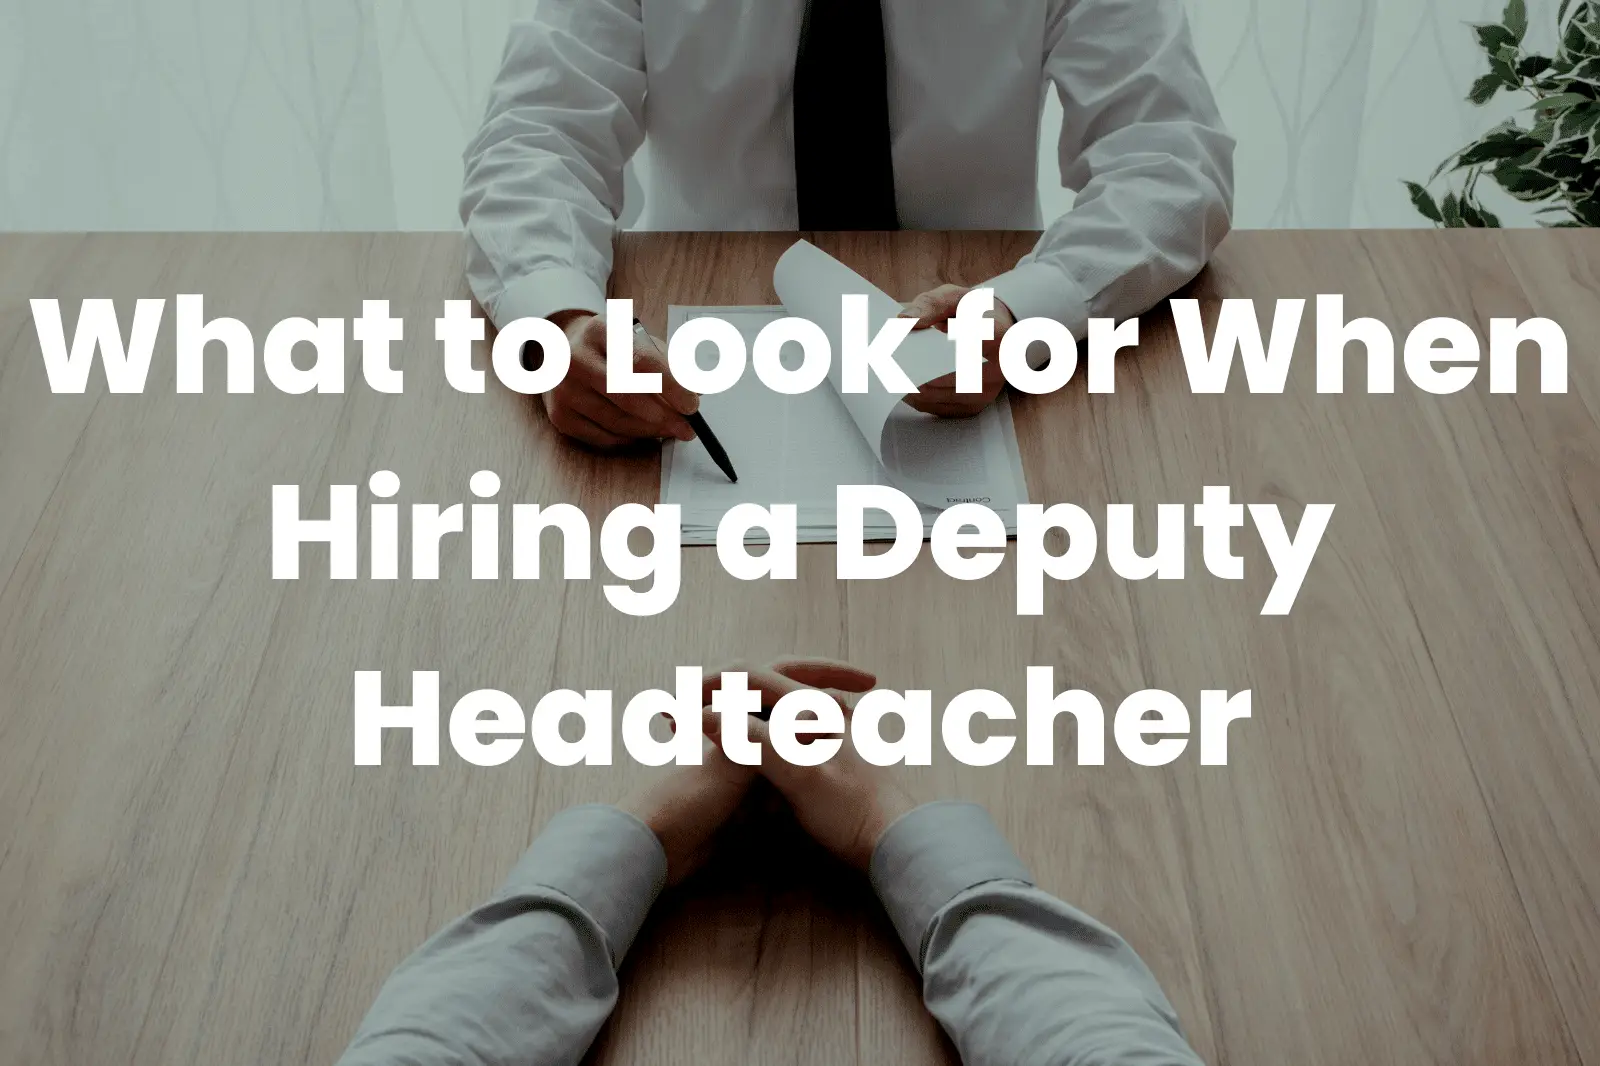 Hiring a Deputy Headteacher